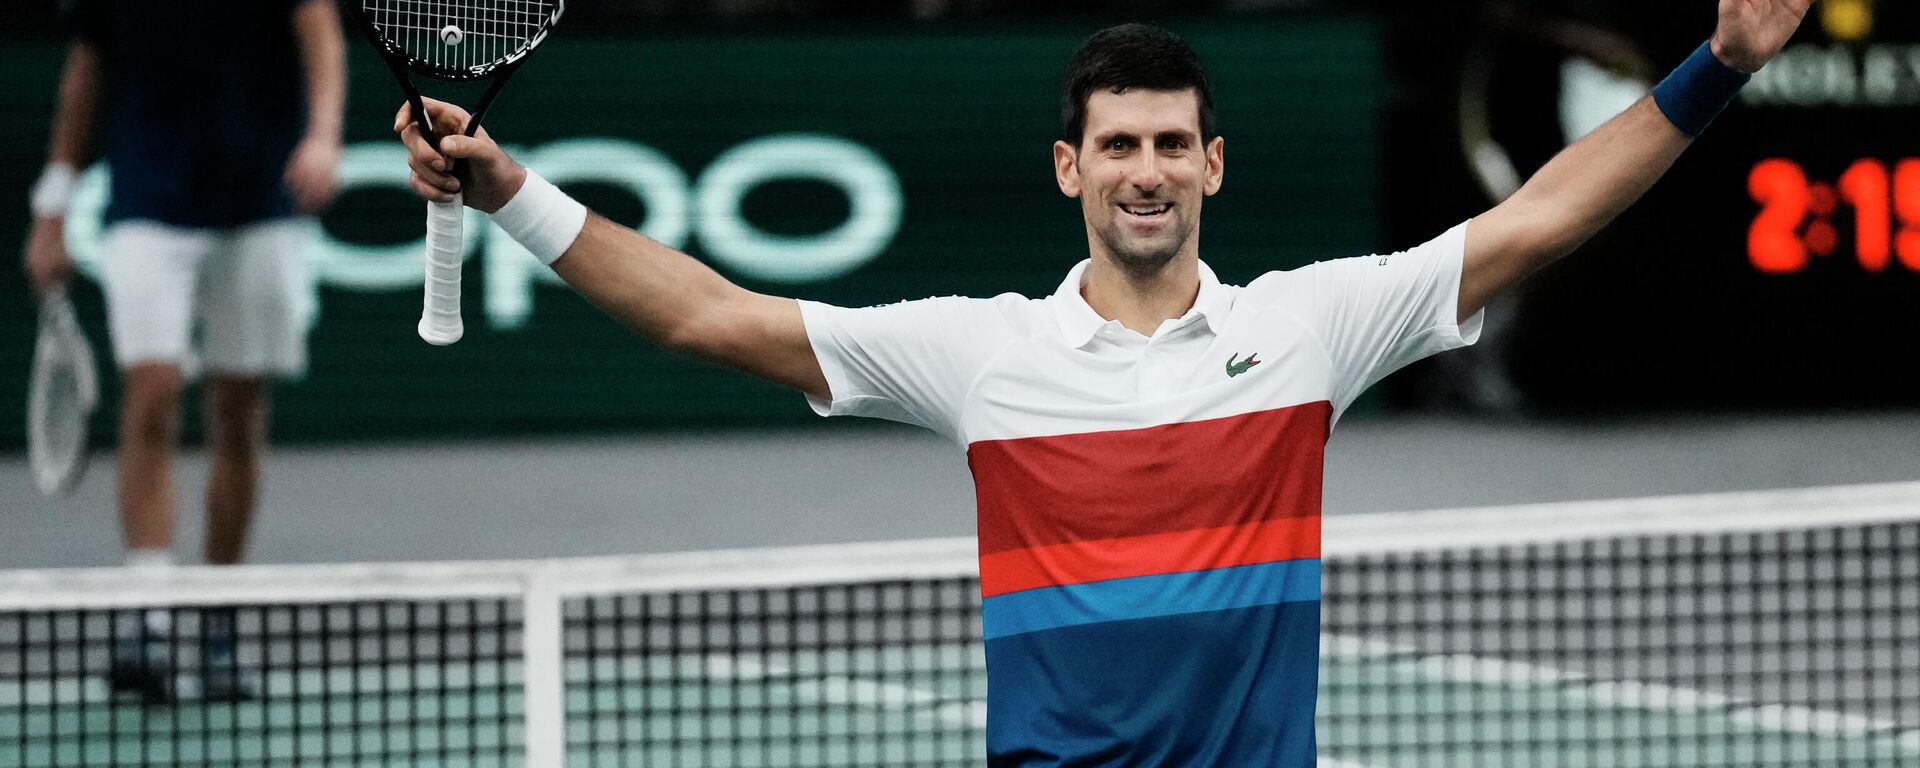 Najbolji teniser sveta Novak Đoković osvojio Masters u Parizu - Sputnik Srbija, 1920, 16.11.2021